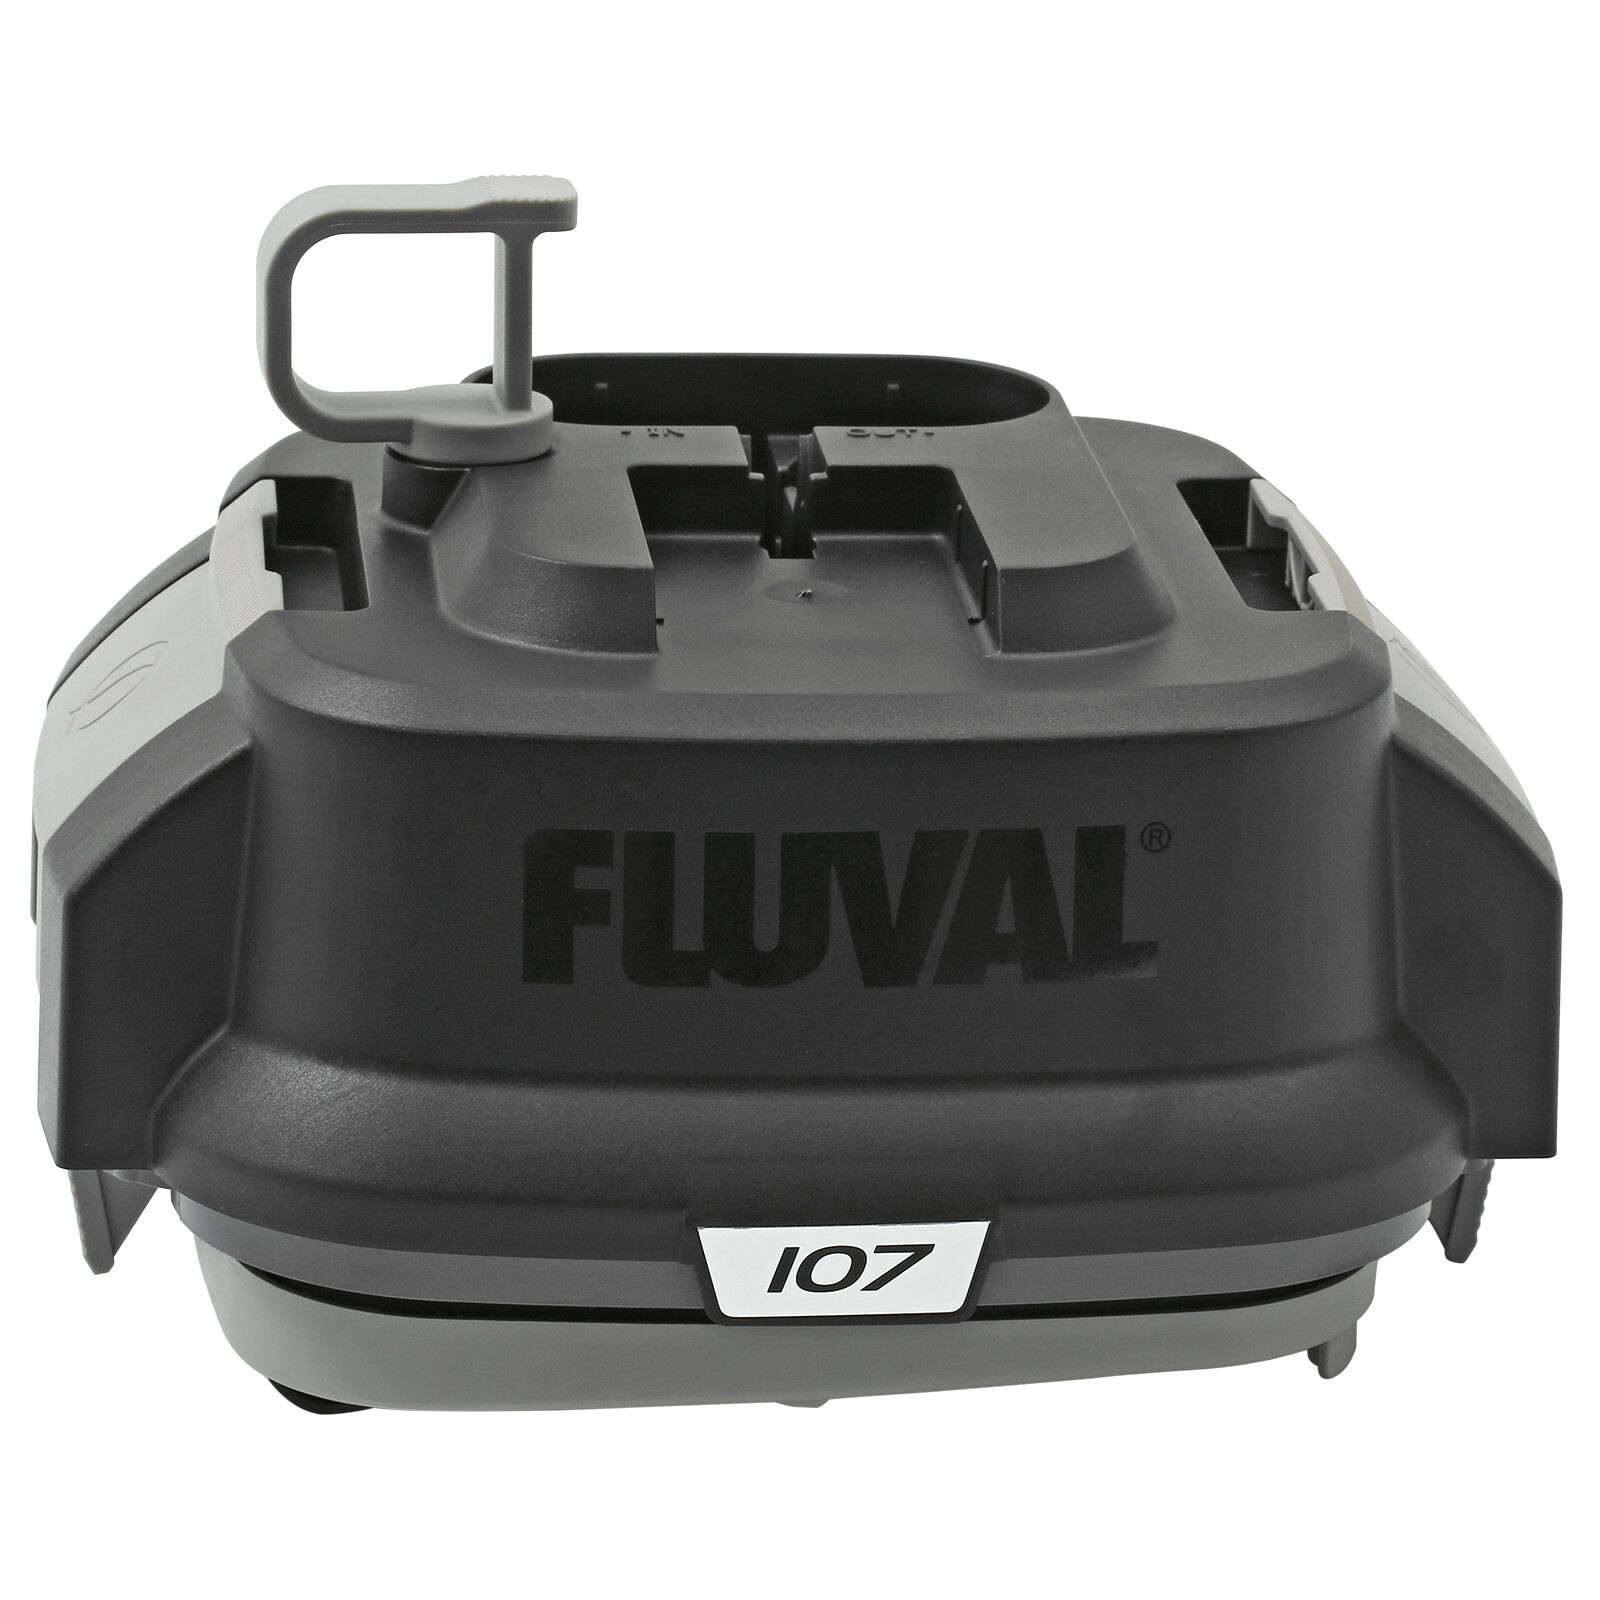 Fluval - 07-Serie Motor Head